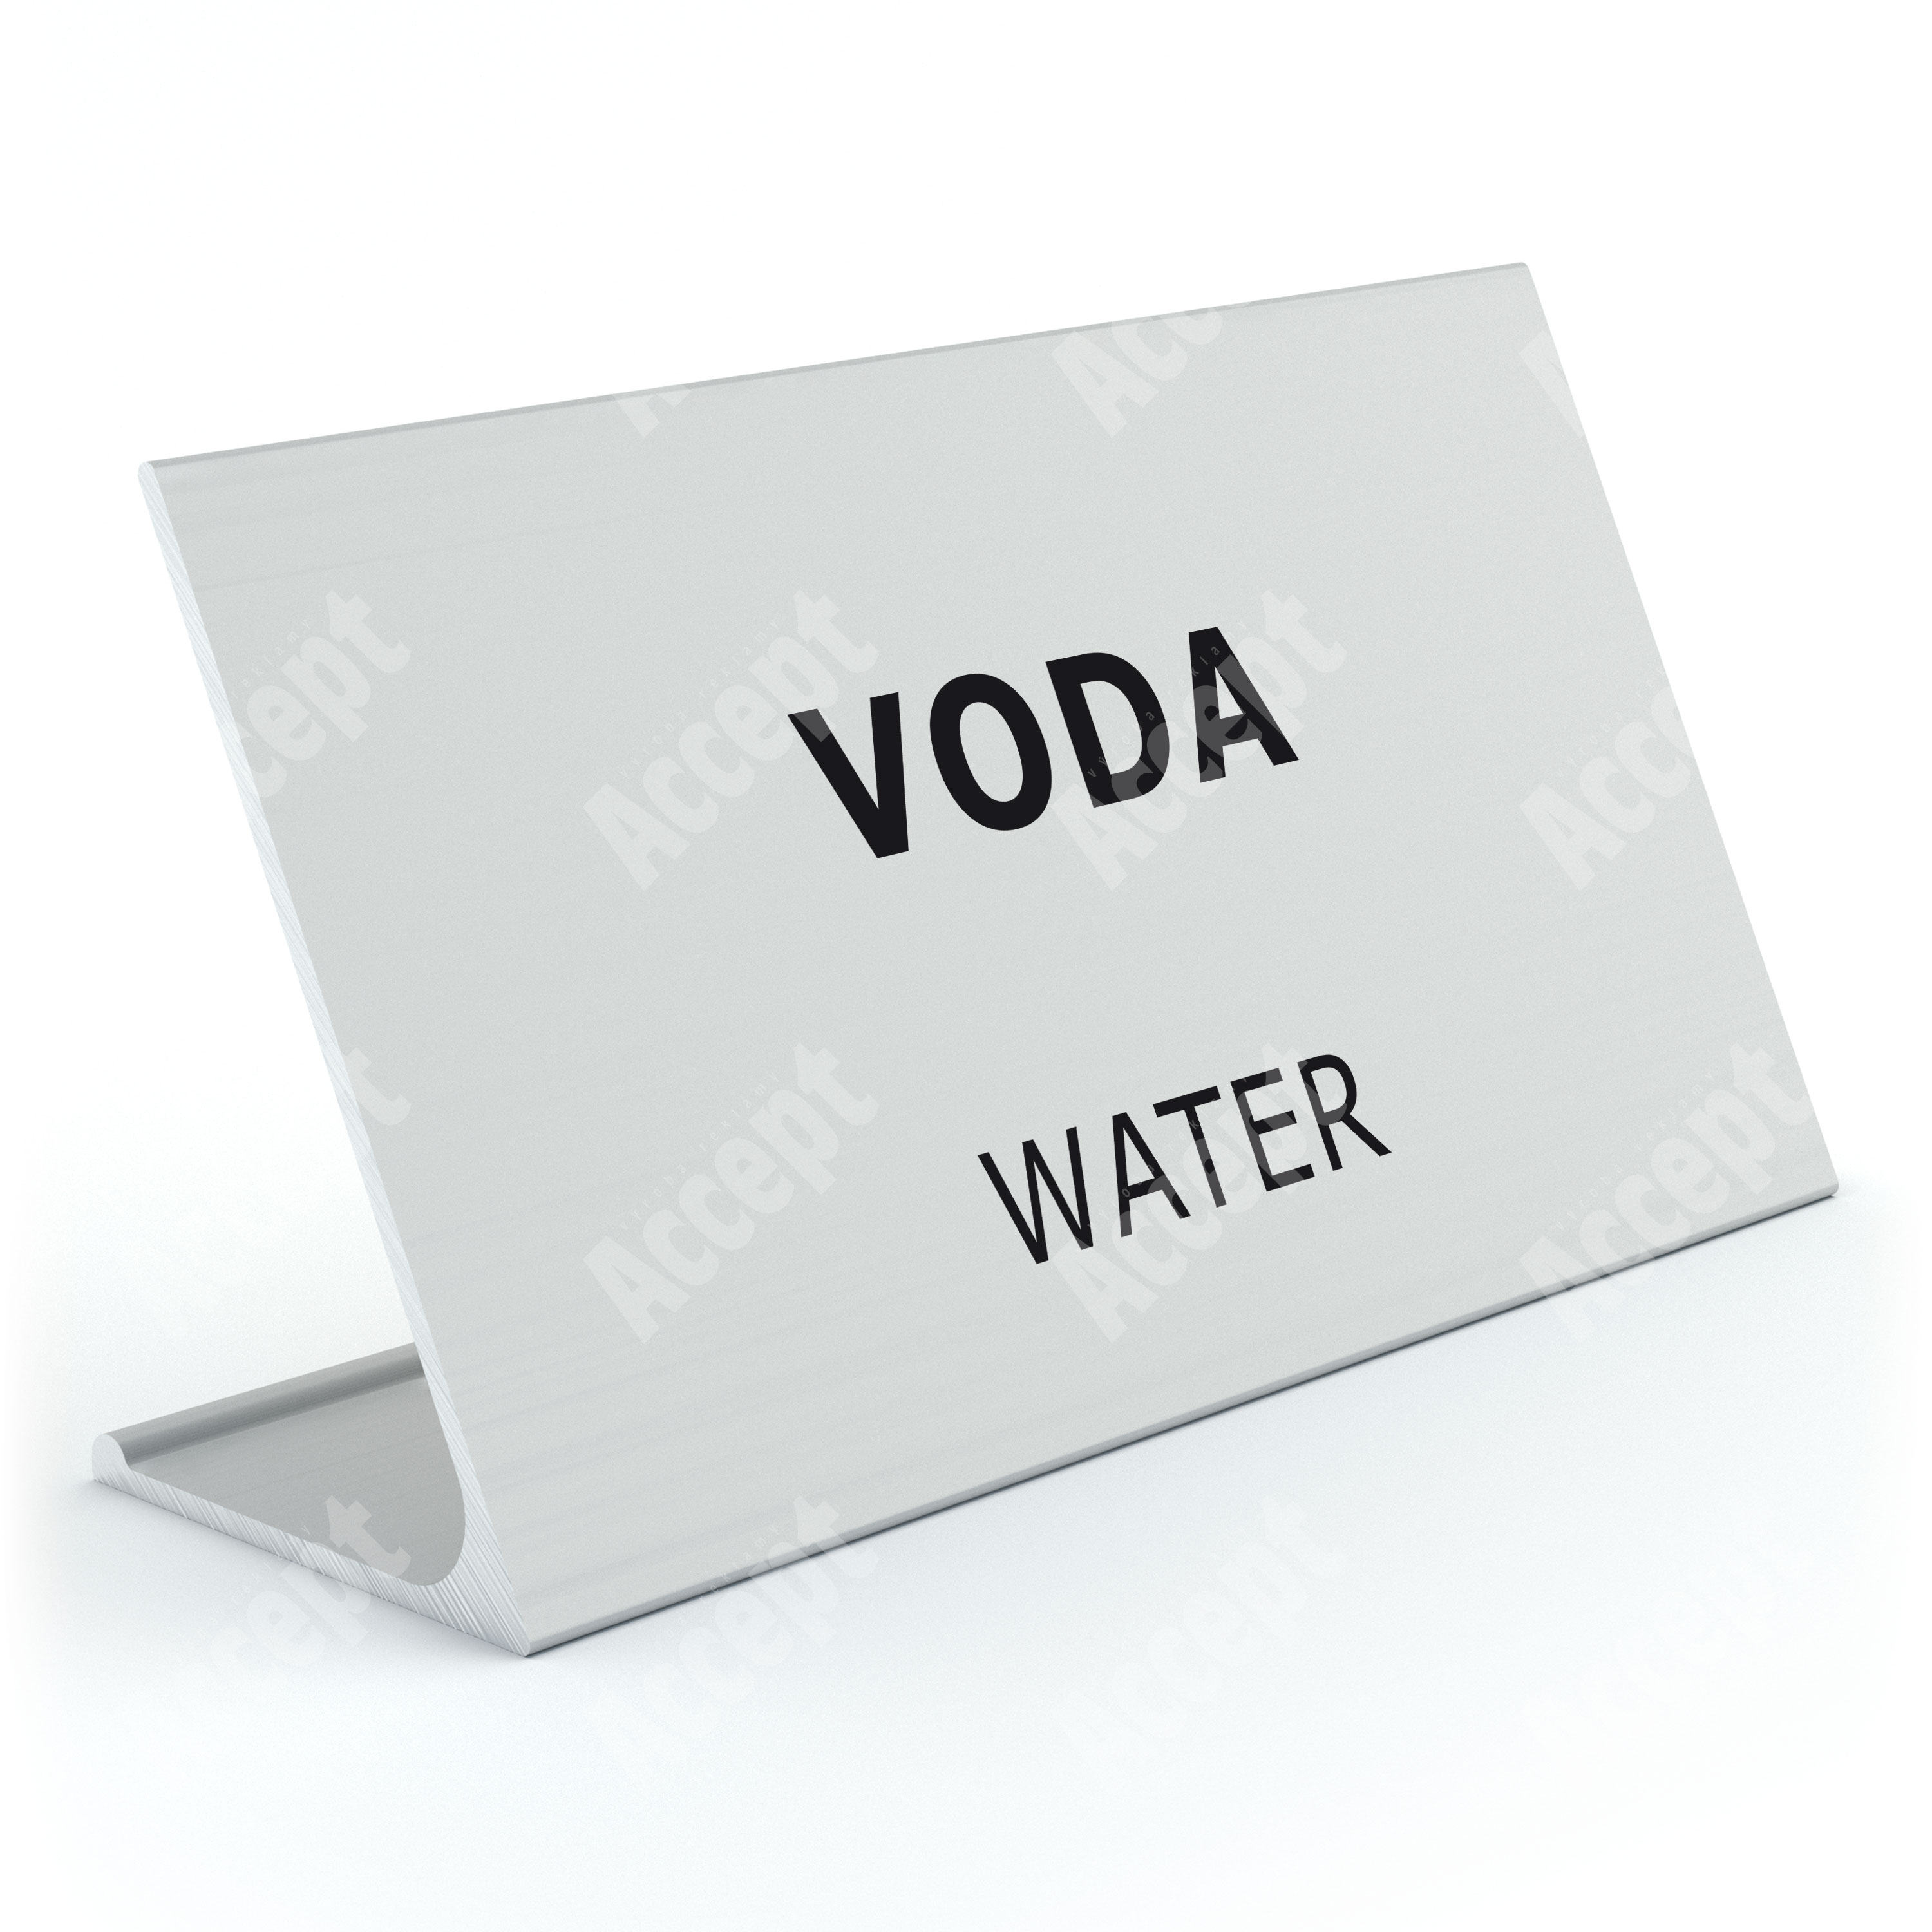 Informační stojánek D-62 "VODA, WATER"